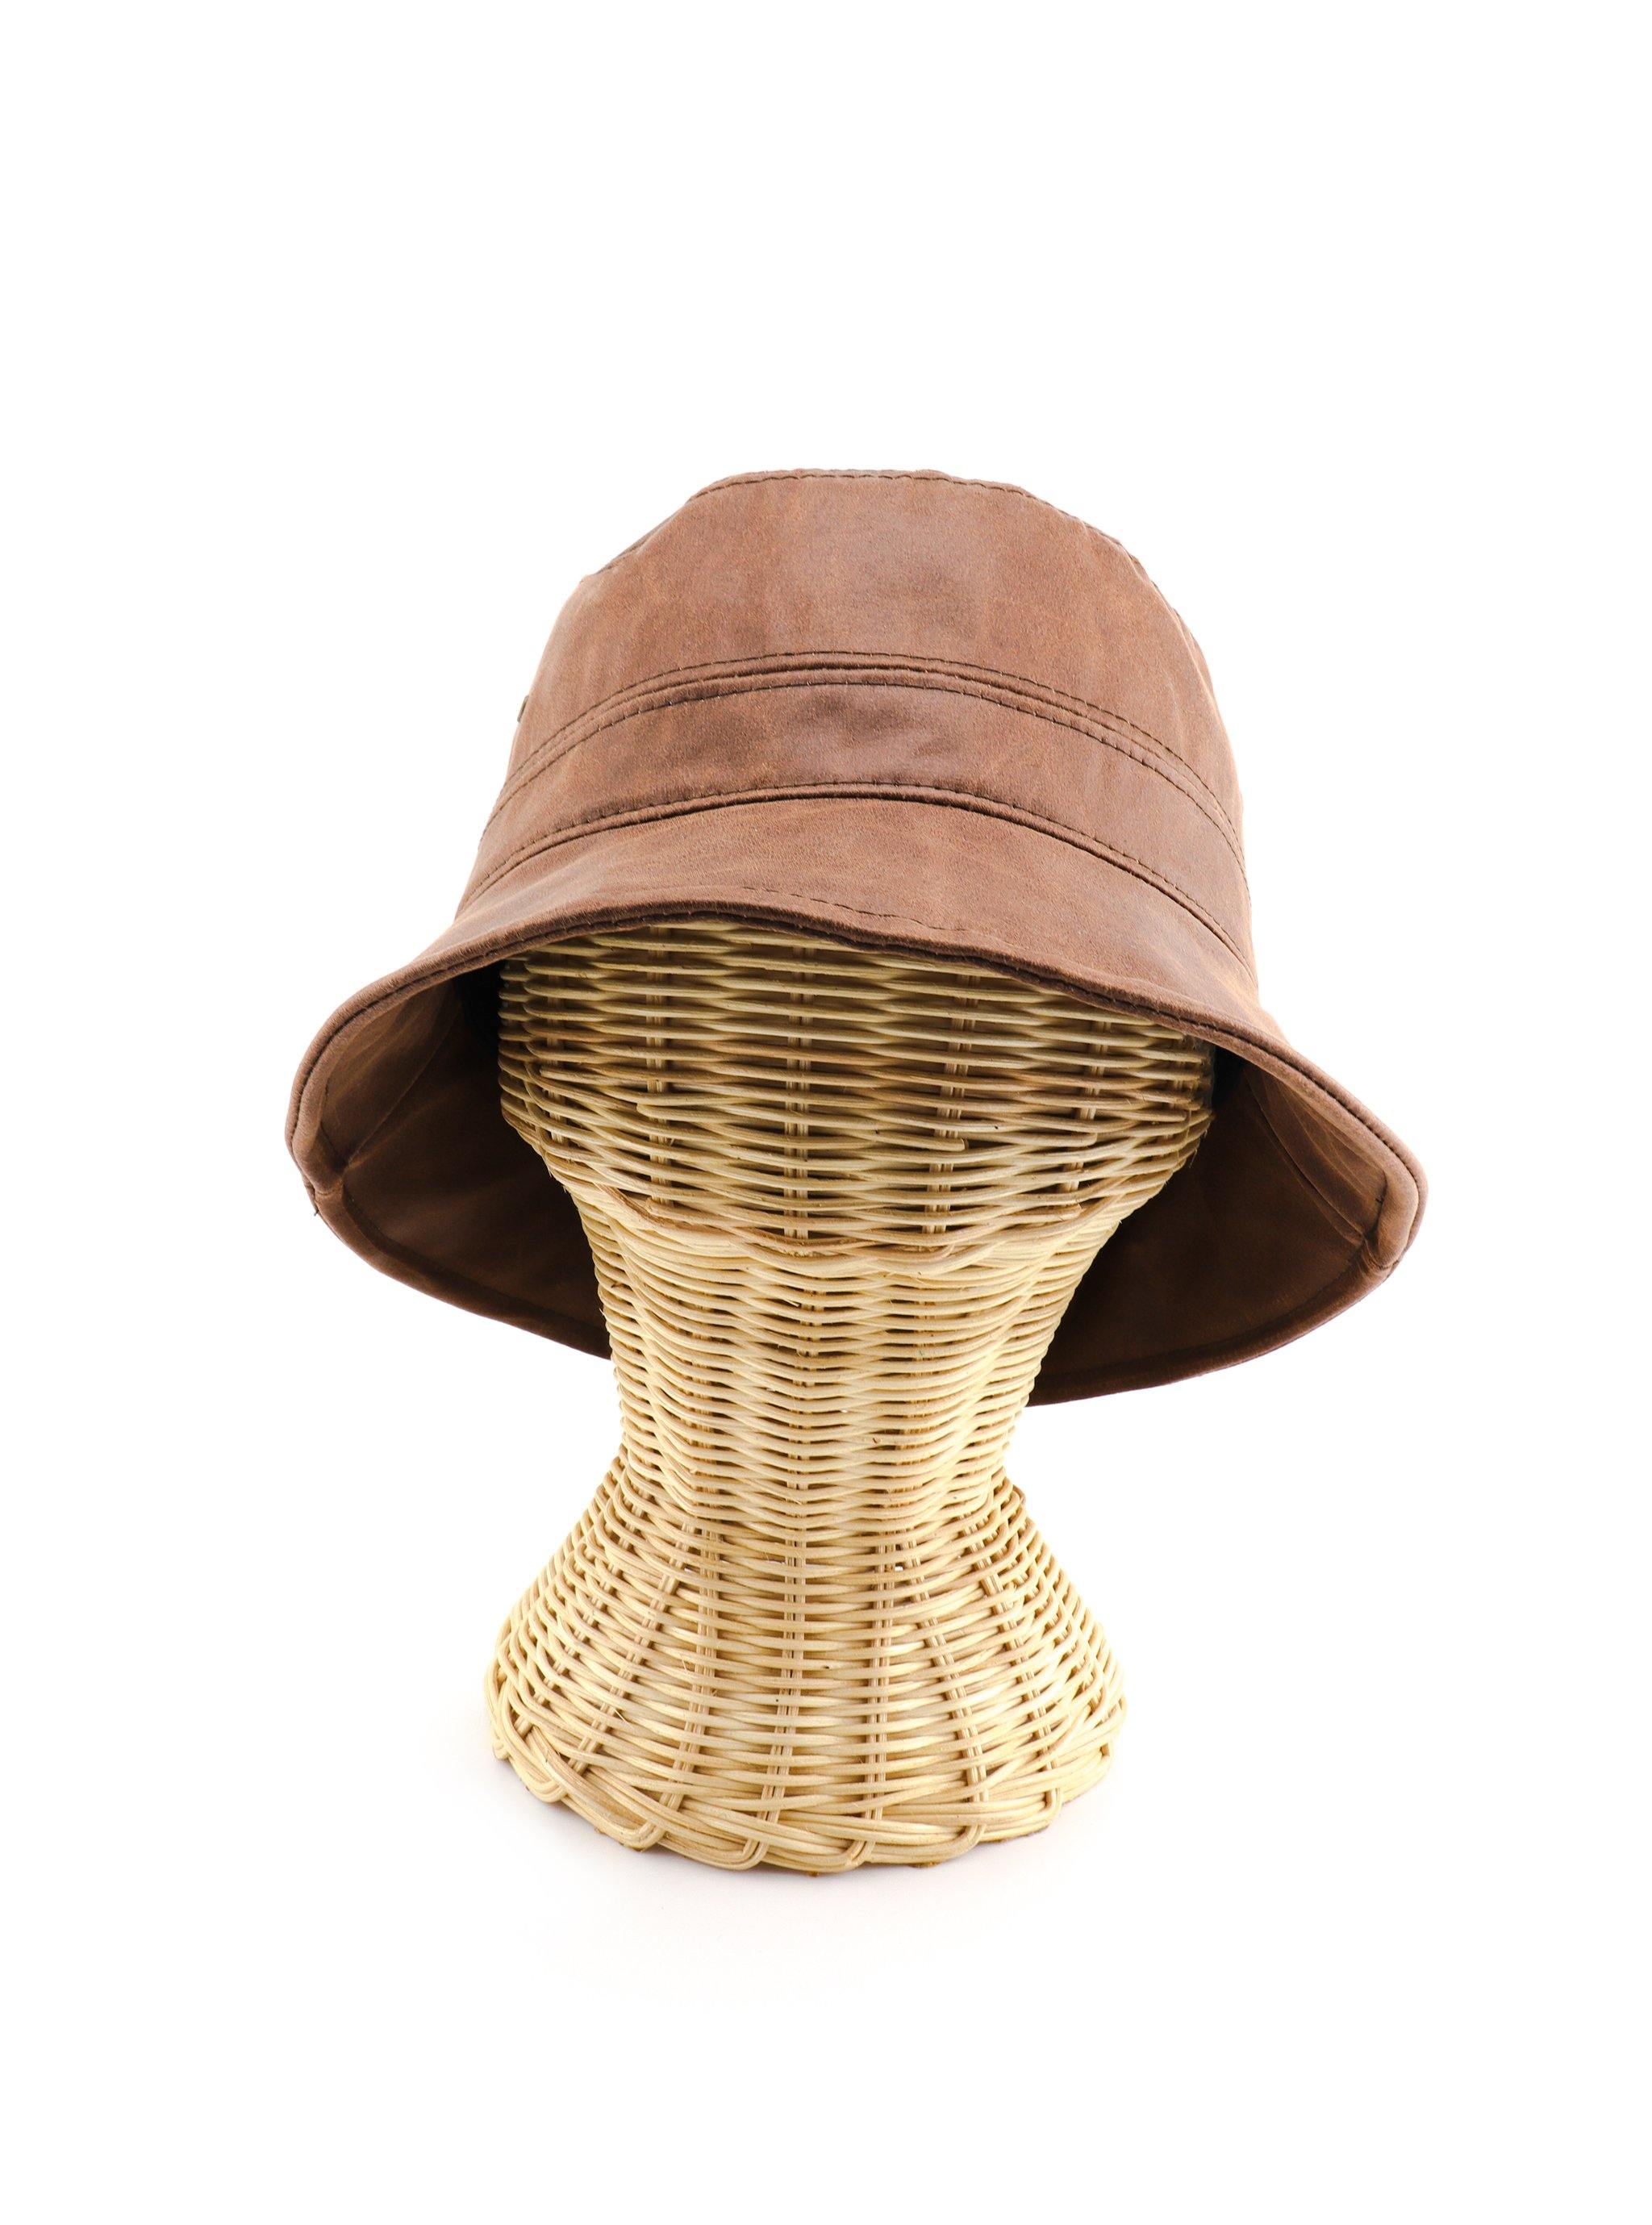 HYLTON BUCKET HAT - Simplique Mode